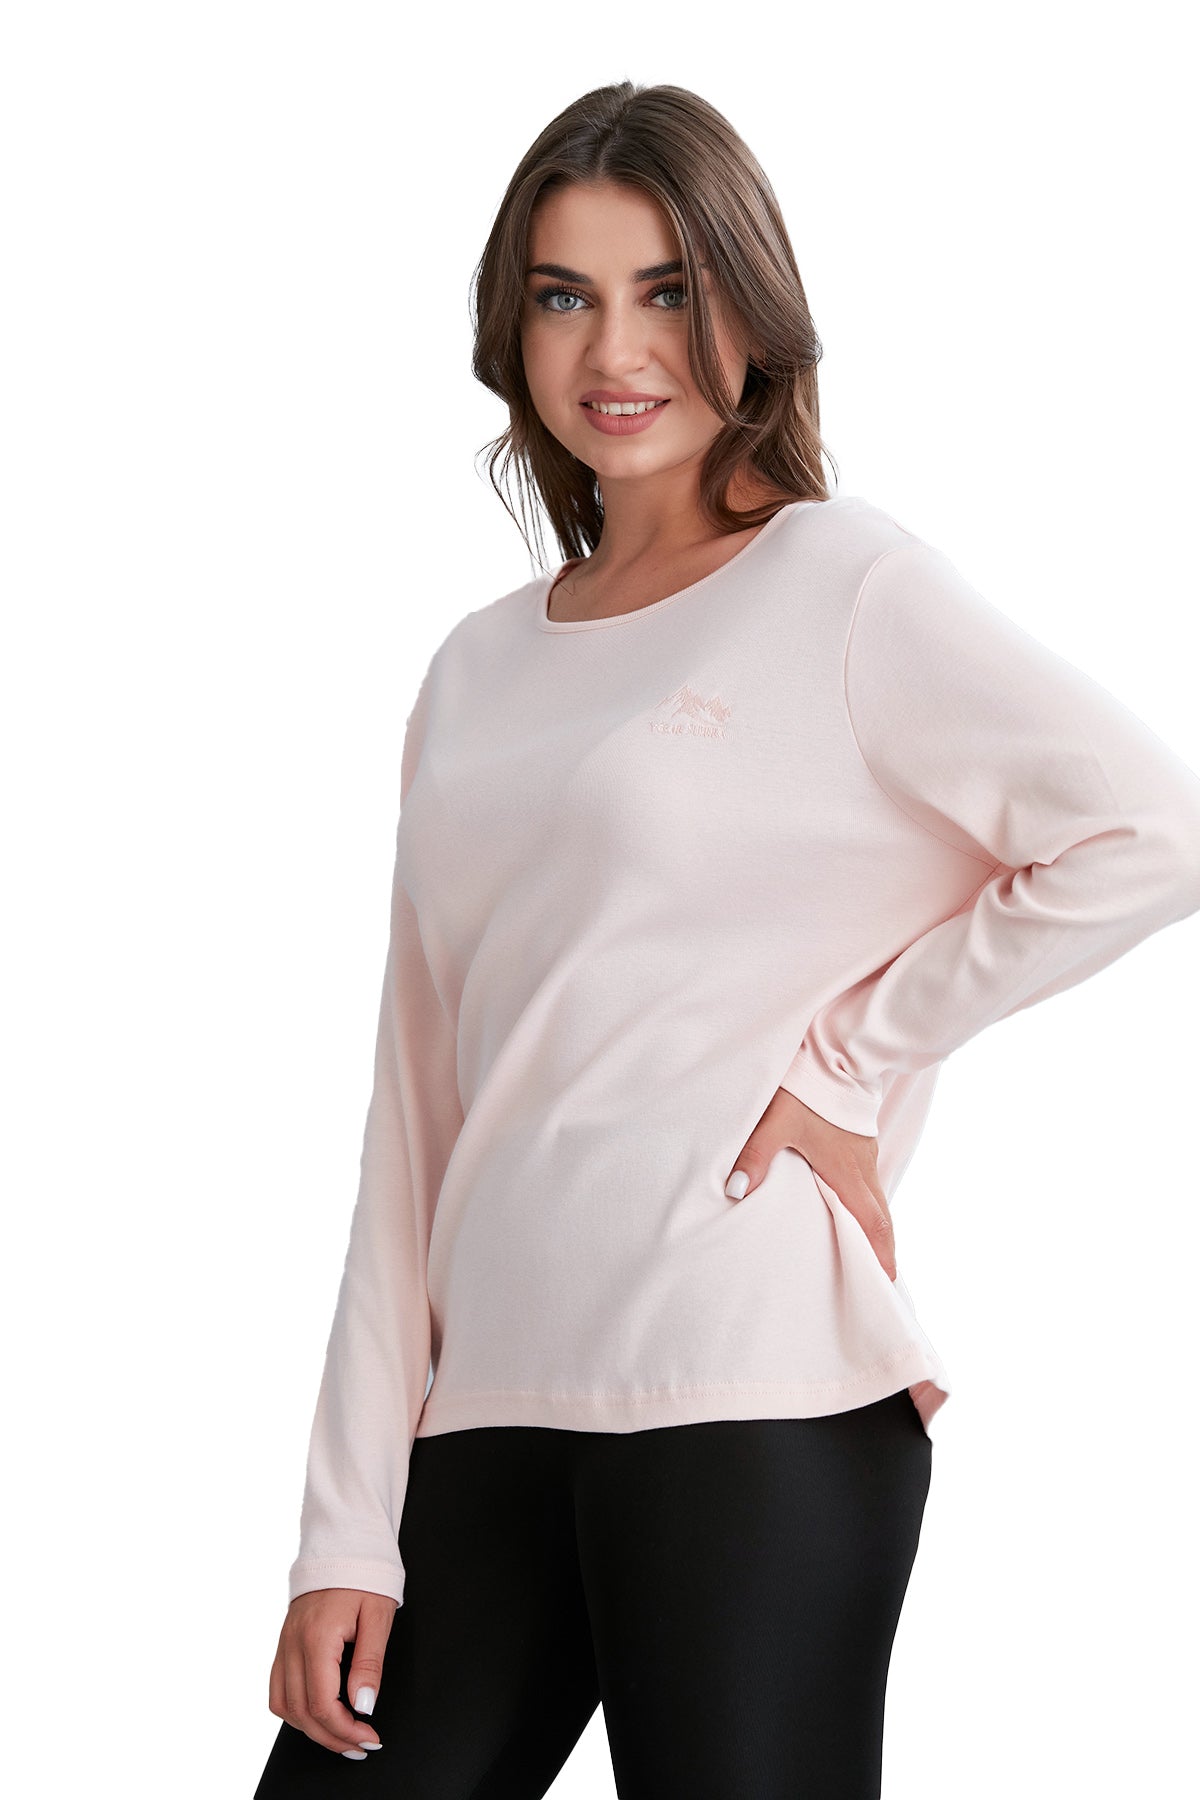 Long Sleeve Scoop Neck T-Shirt for Women in Pretty Fall Colors - Wear Sierra